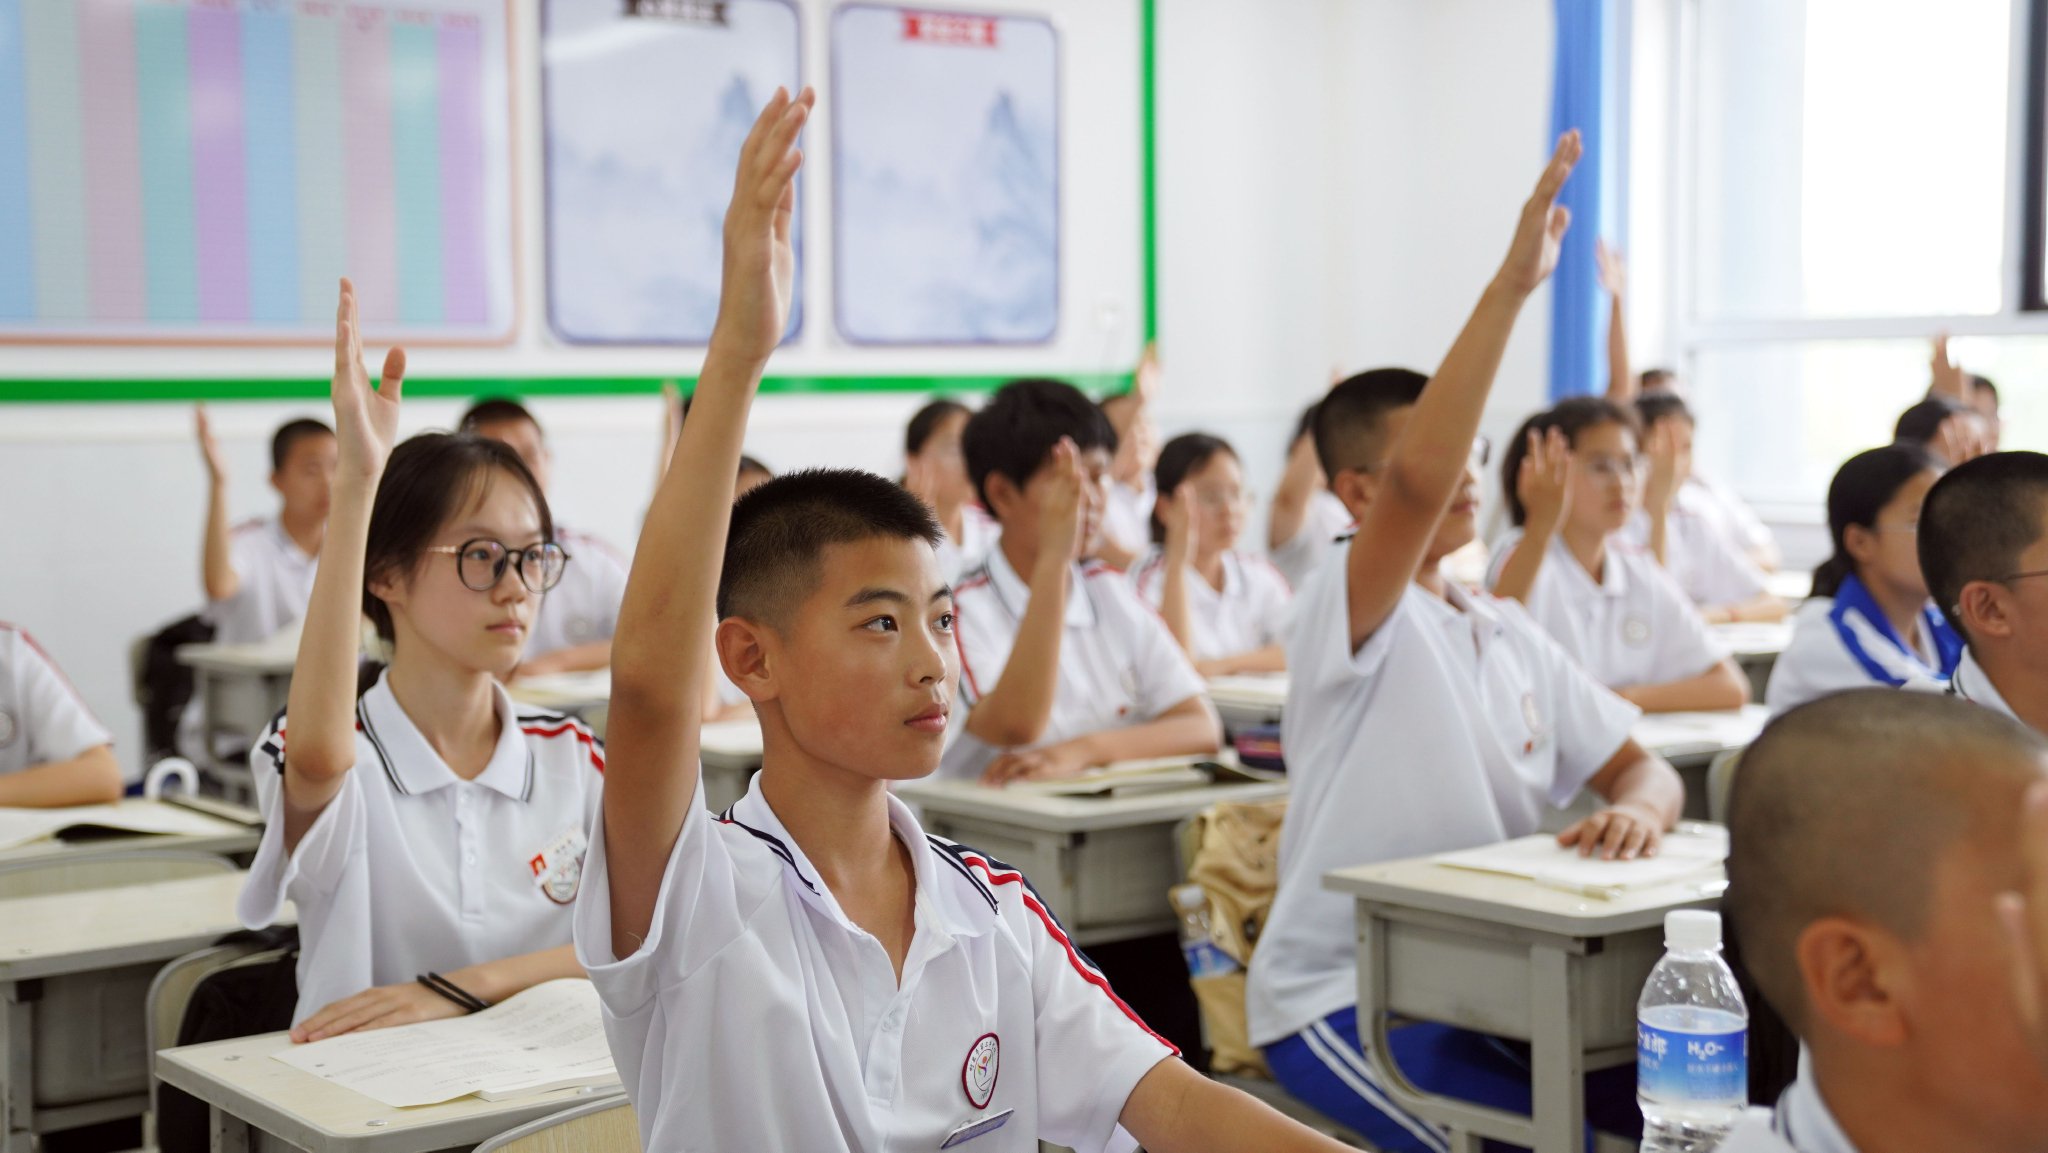 8月21日,舒兰市第三中学校学生在教室内认真上课石天蛟/摄